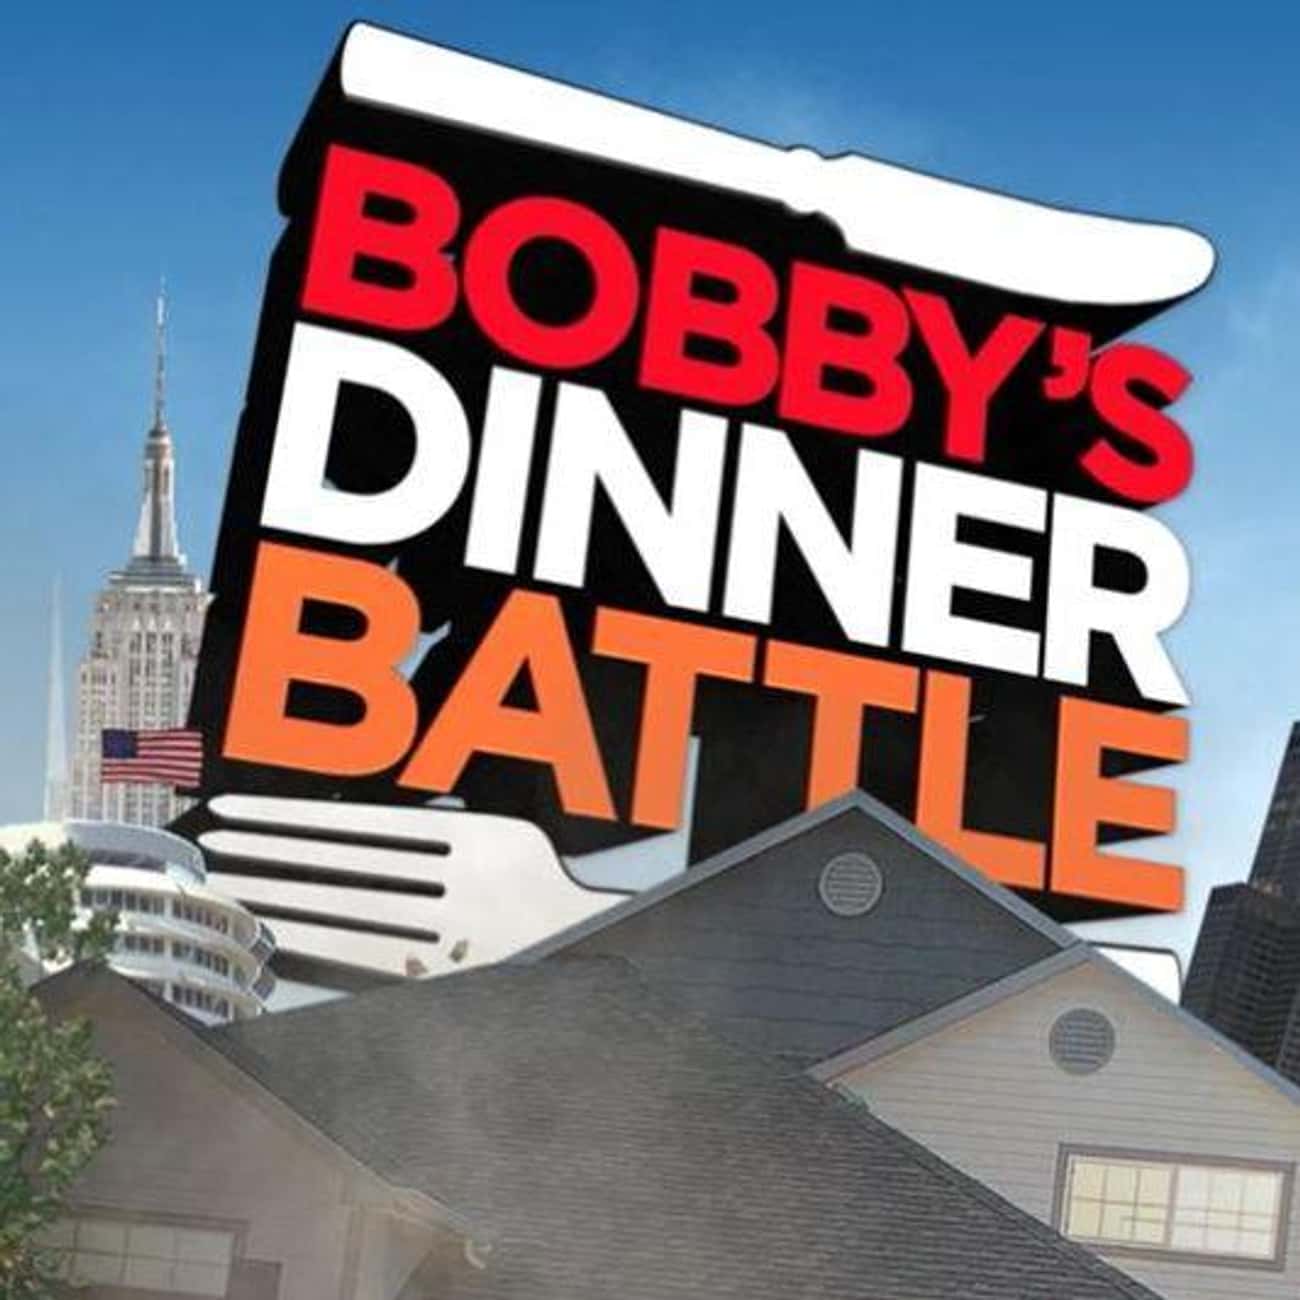 Bobby's Dinner Battle